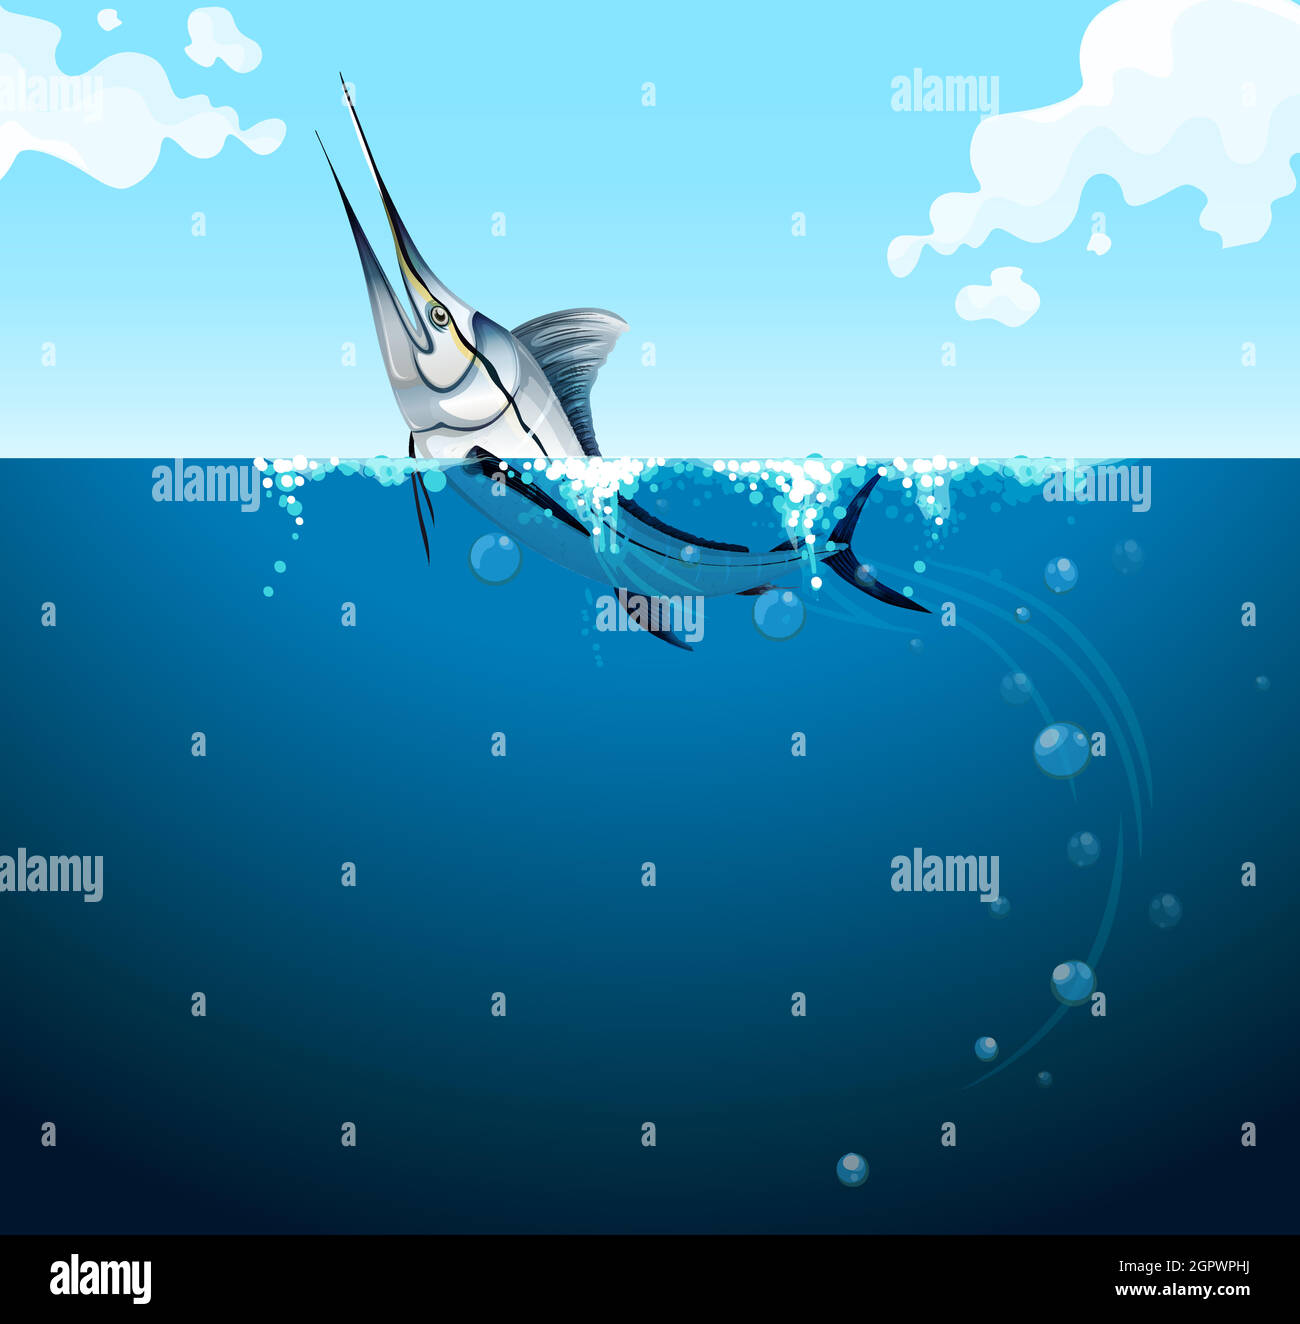 Swordfish swimming in the ocean Stock Vector